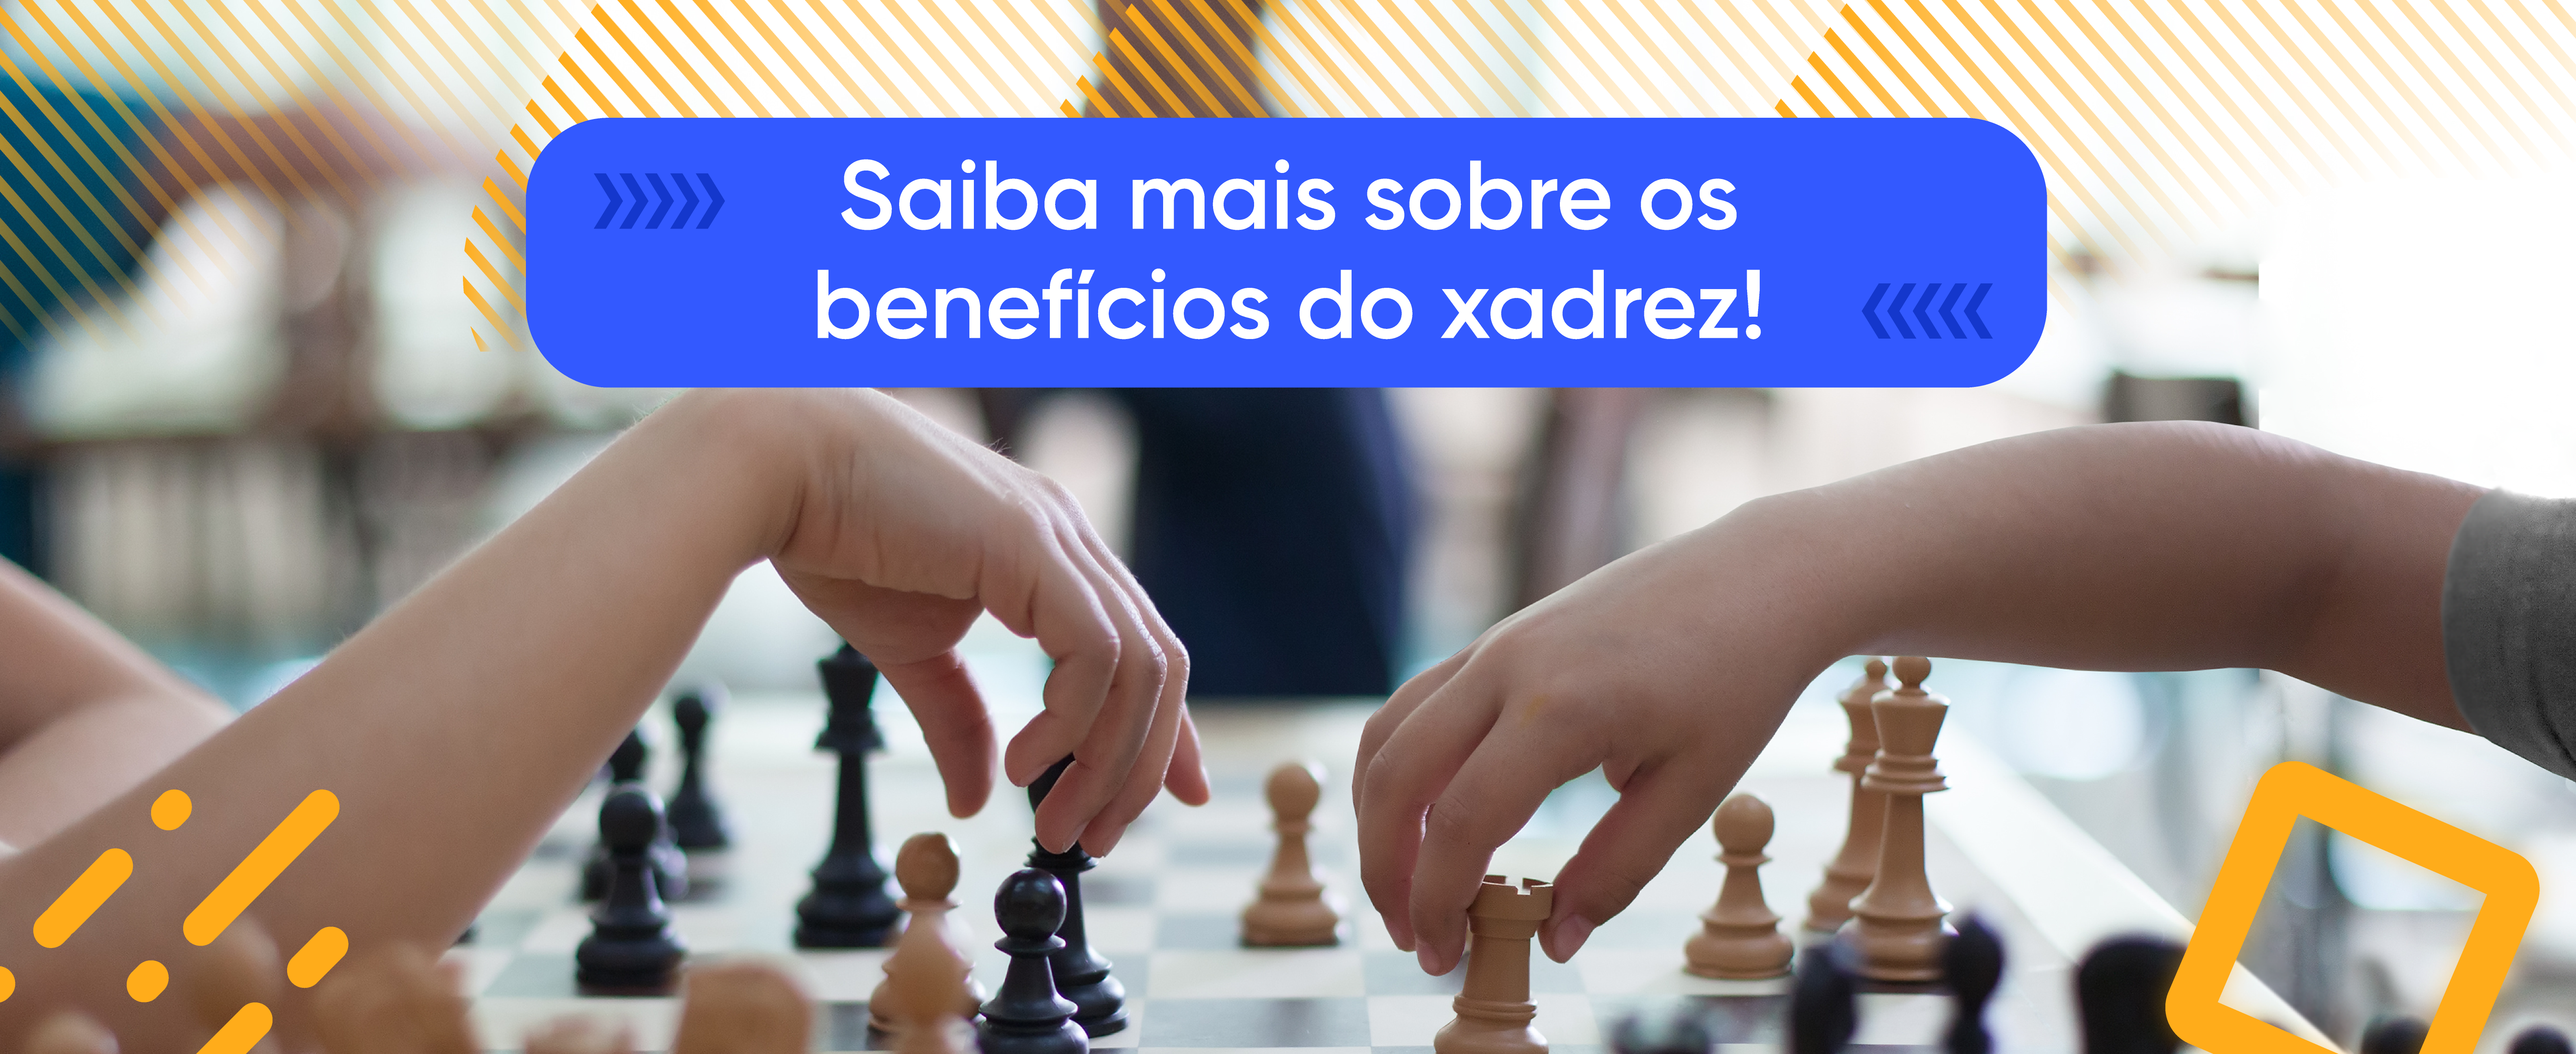 Saiba mais sobre os benefícios do xadrez! - Apogeu